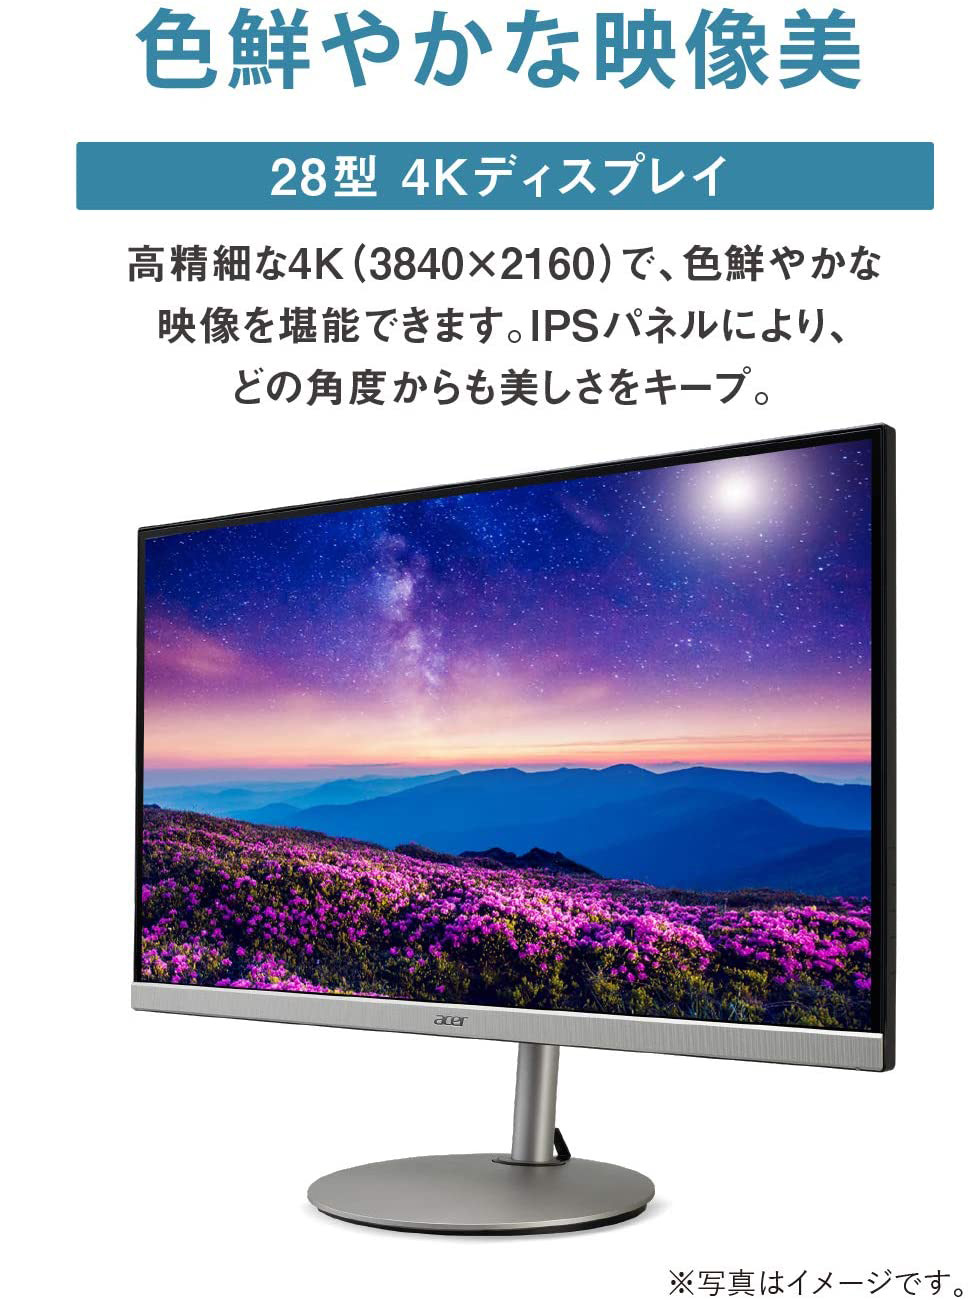 Acer 28型 4K/HDR対応 液晶ディスプレイ (IPS/3840x2160/HDR10/HDMI 